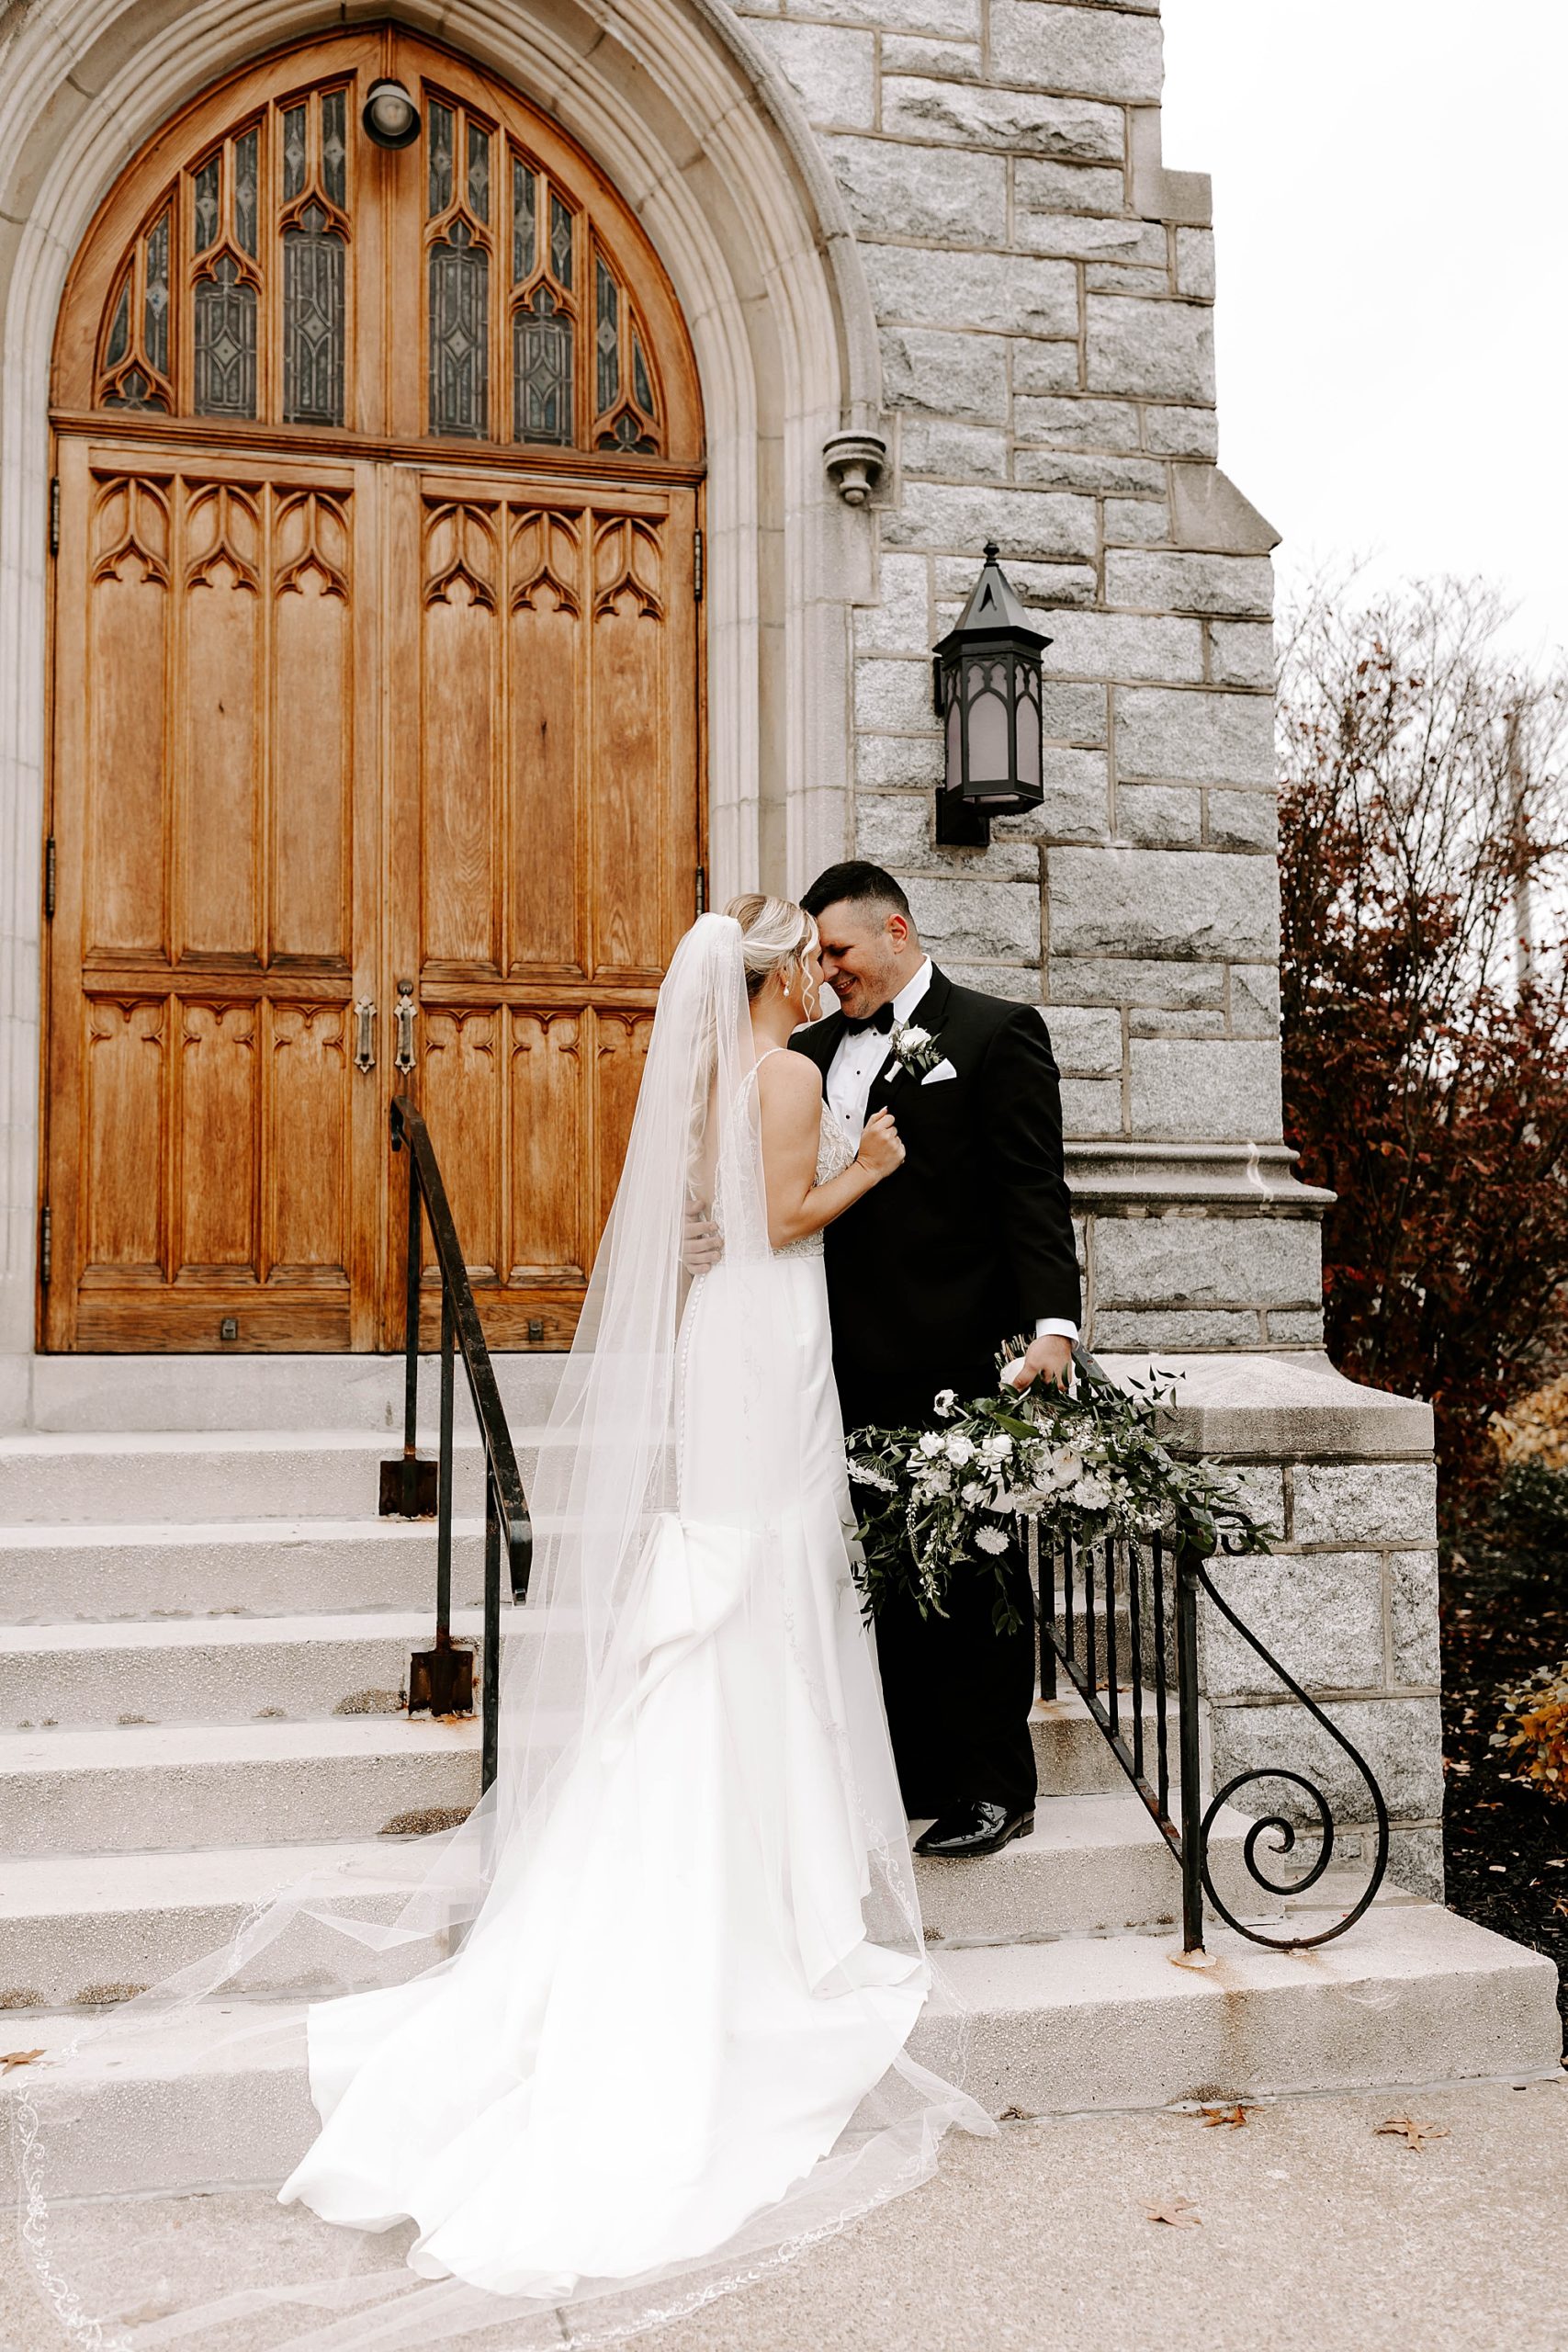 Rachel Wehan Photography, wedding photographer in Pittsburgh